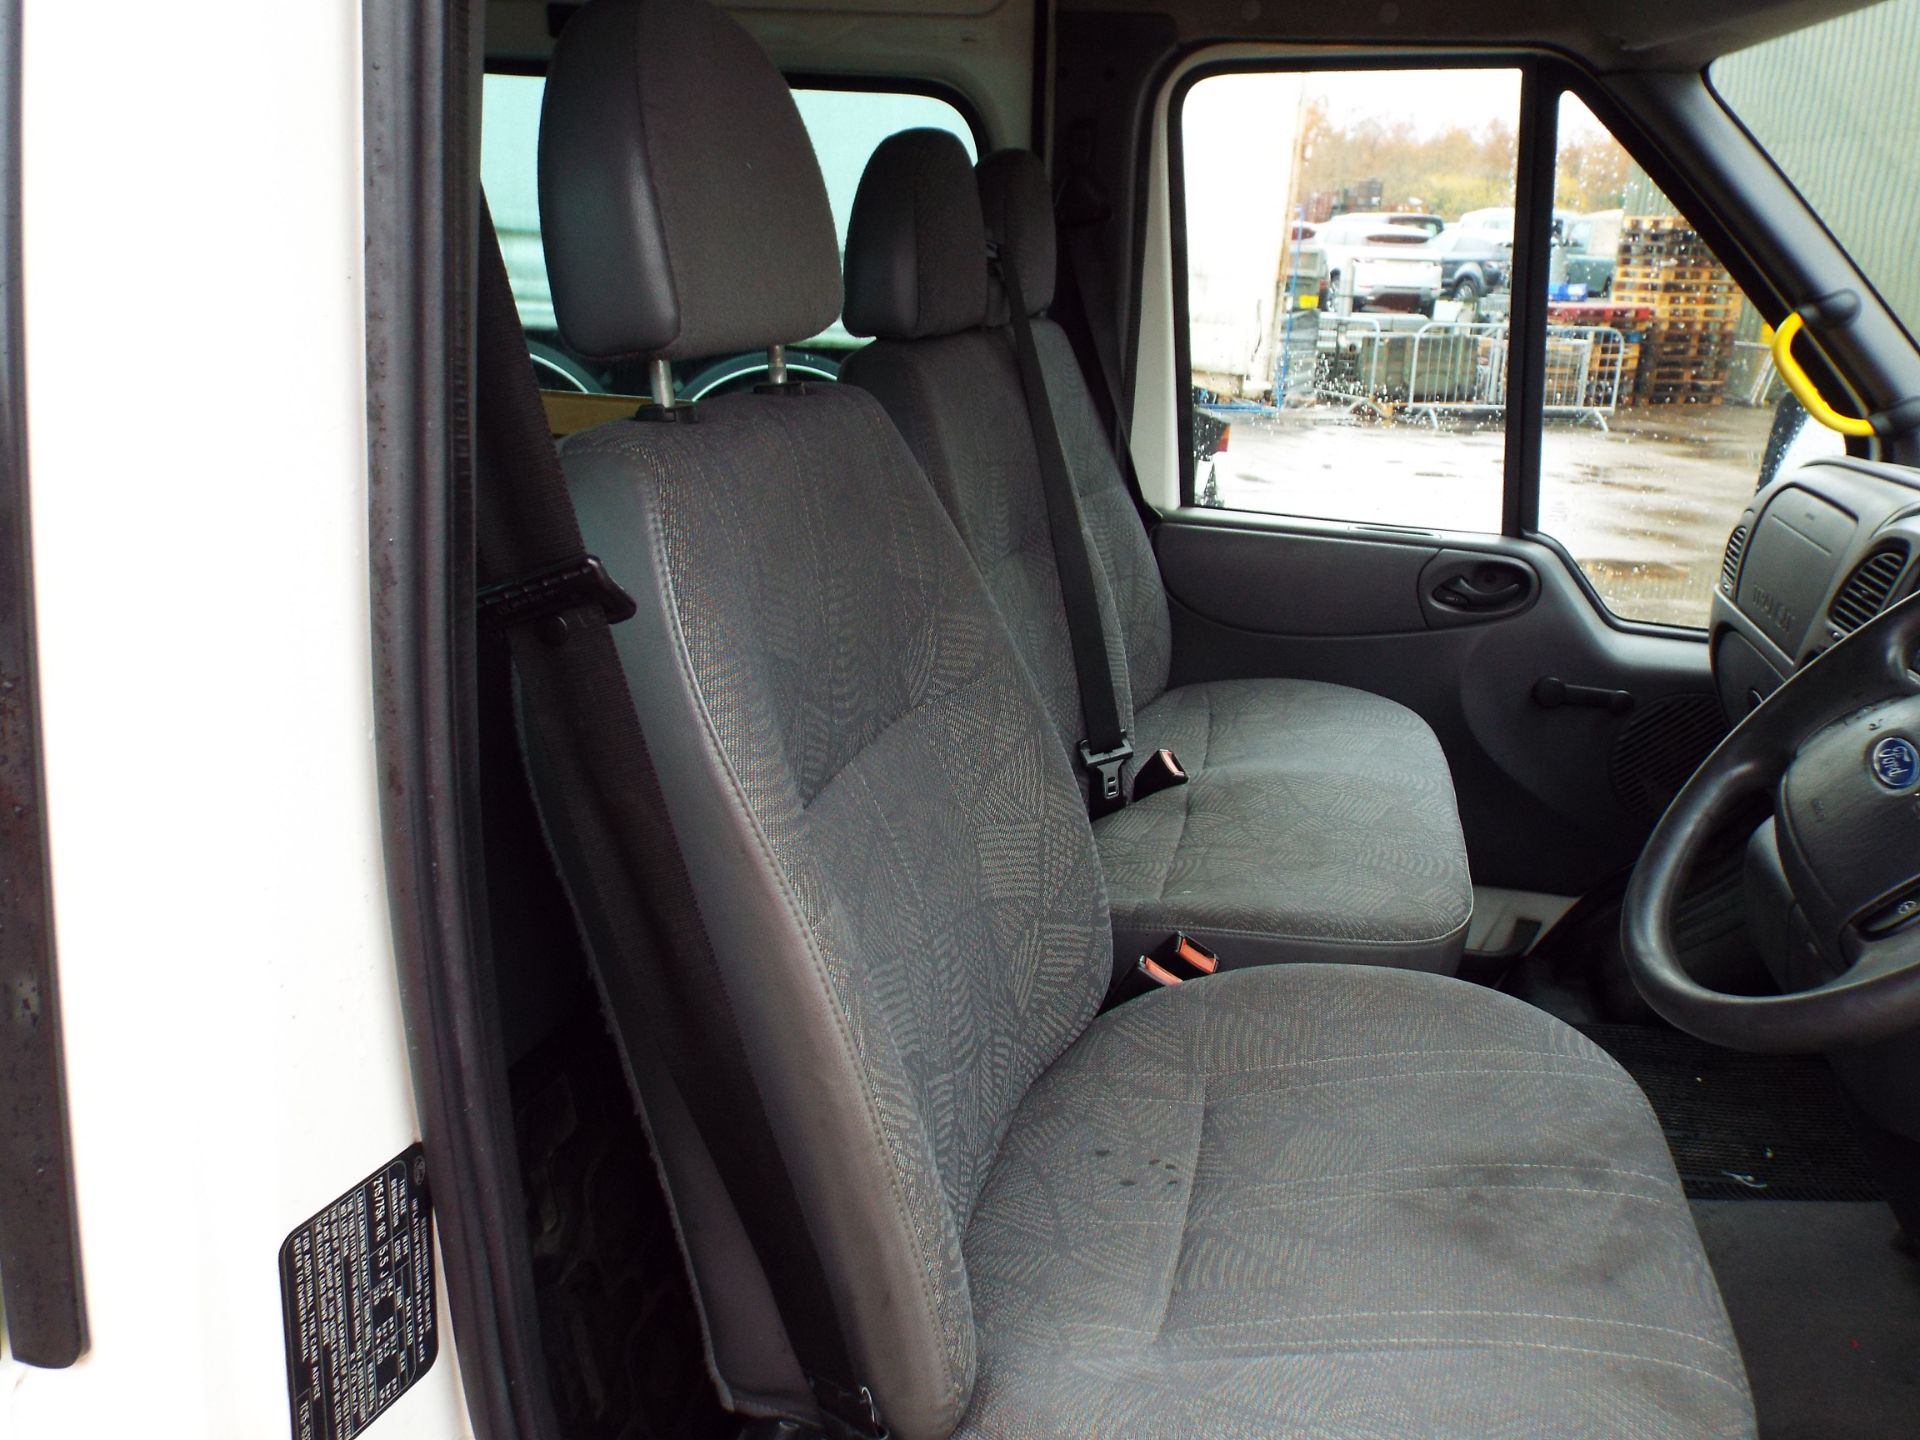 Ford Transit 11 Seat Minibus - Image 12 of 20